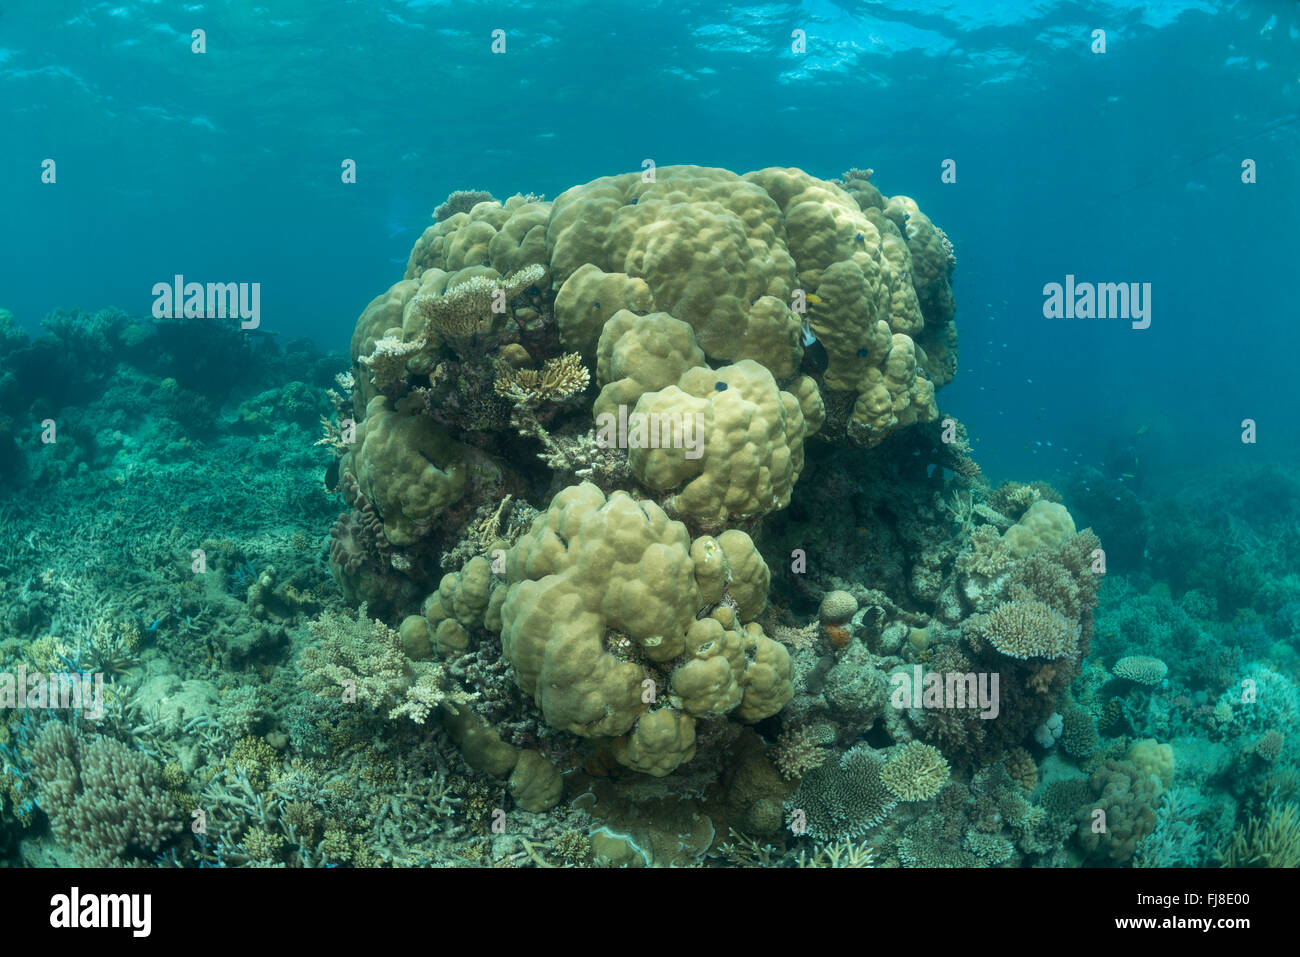 Arrecifes de coral sanos de la GBR. Foto de stock